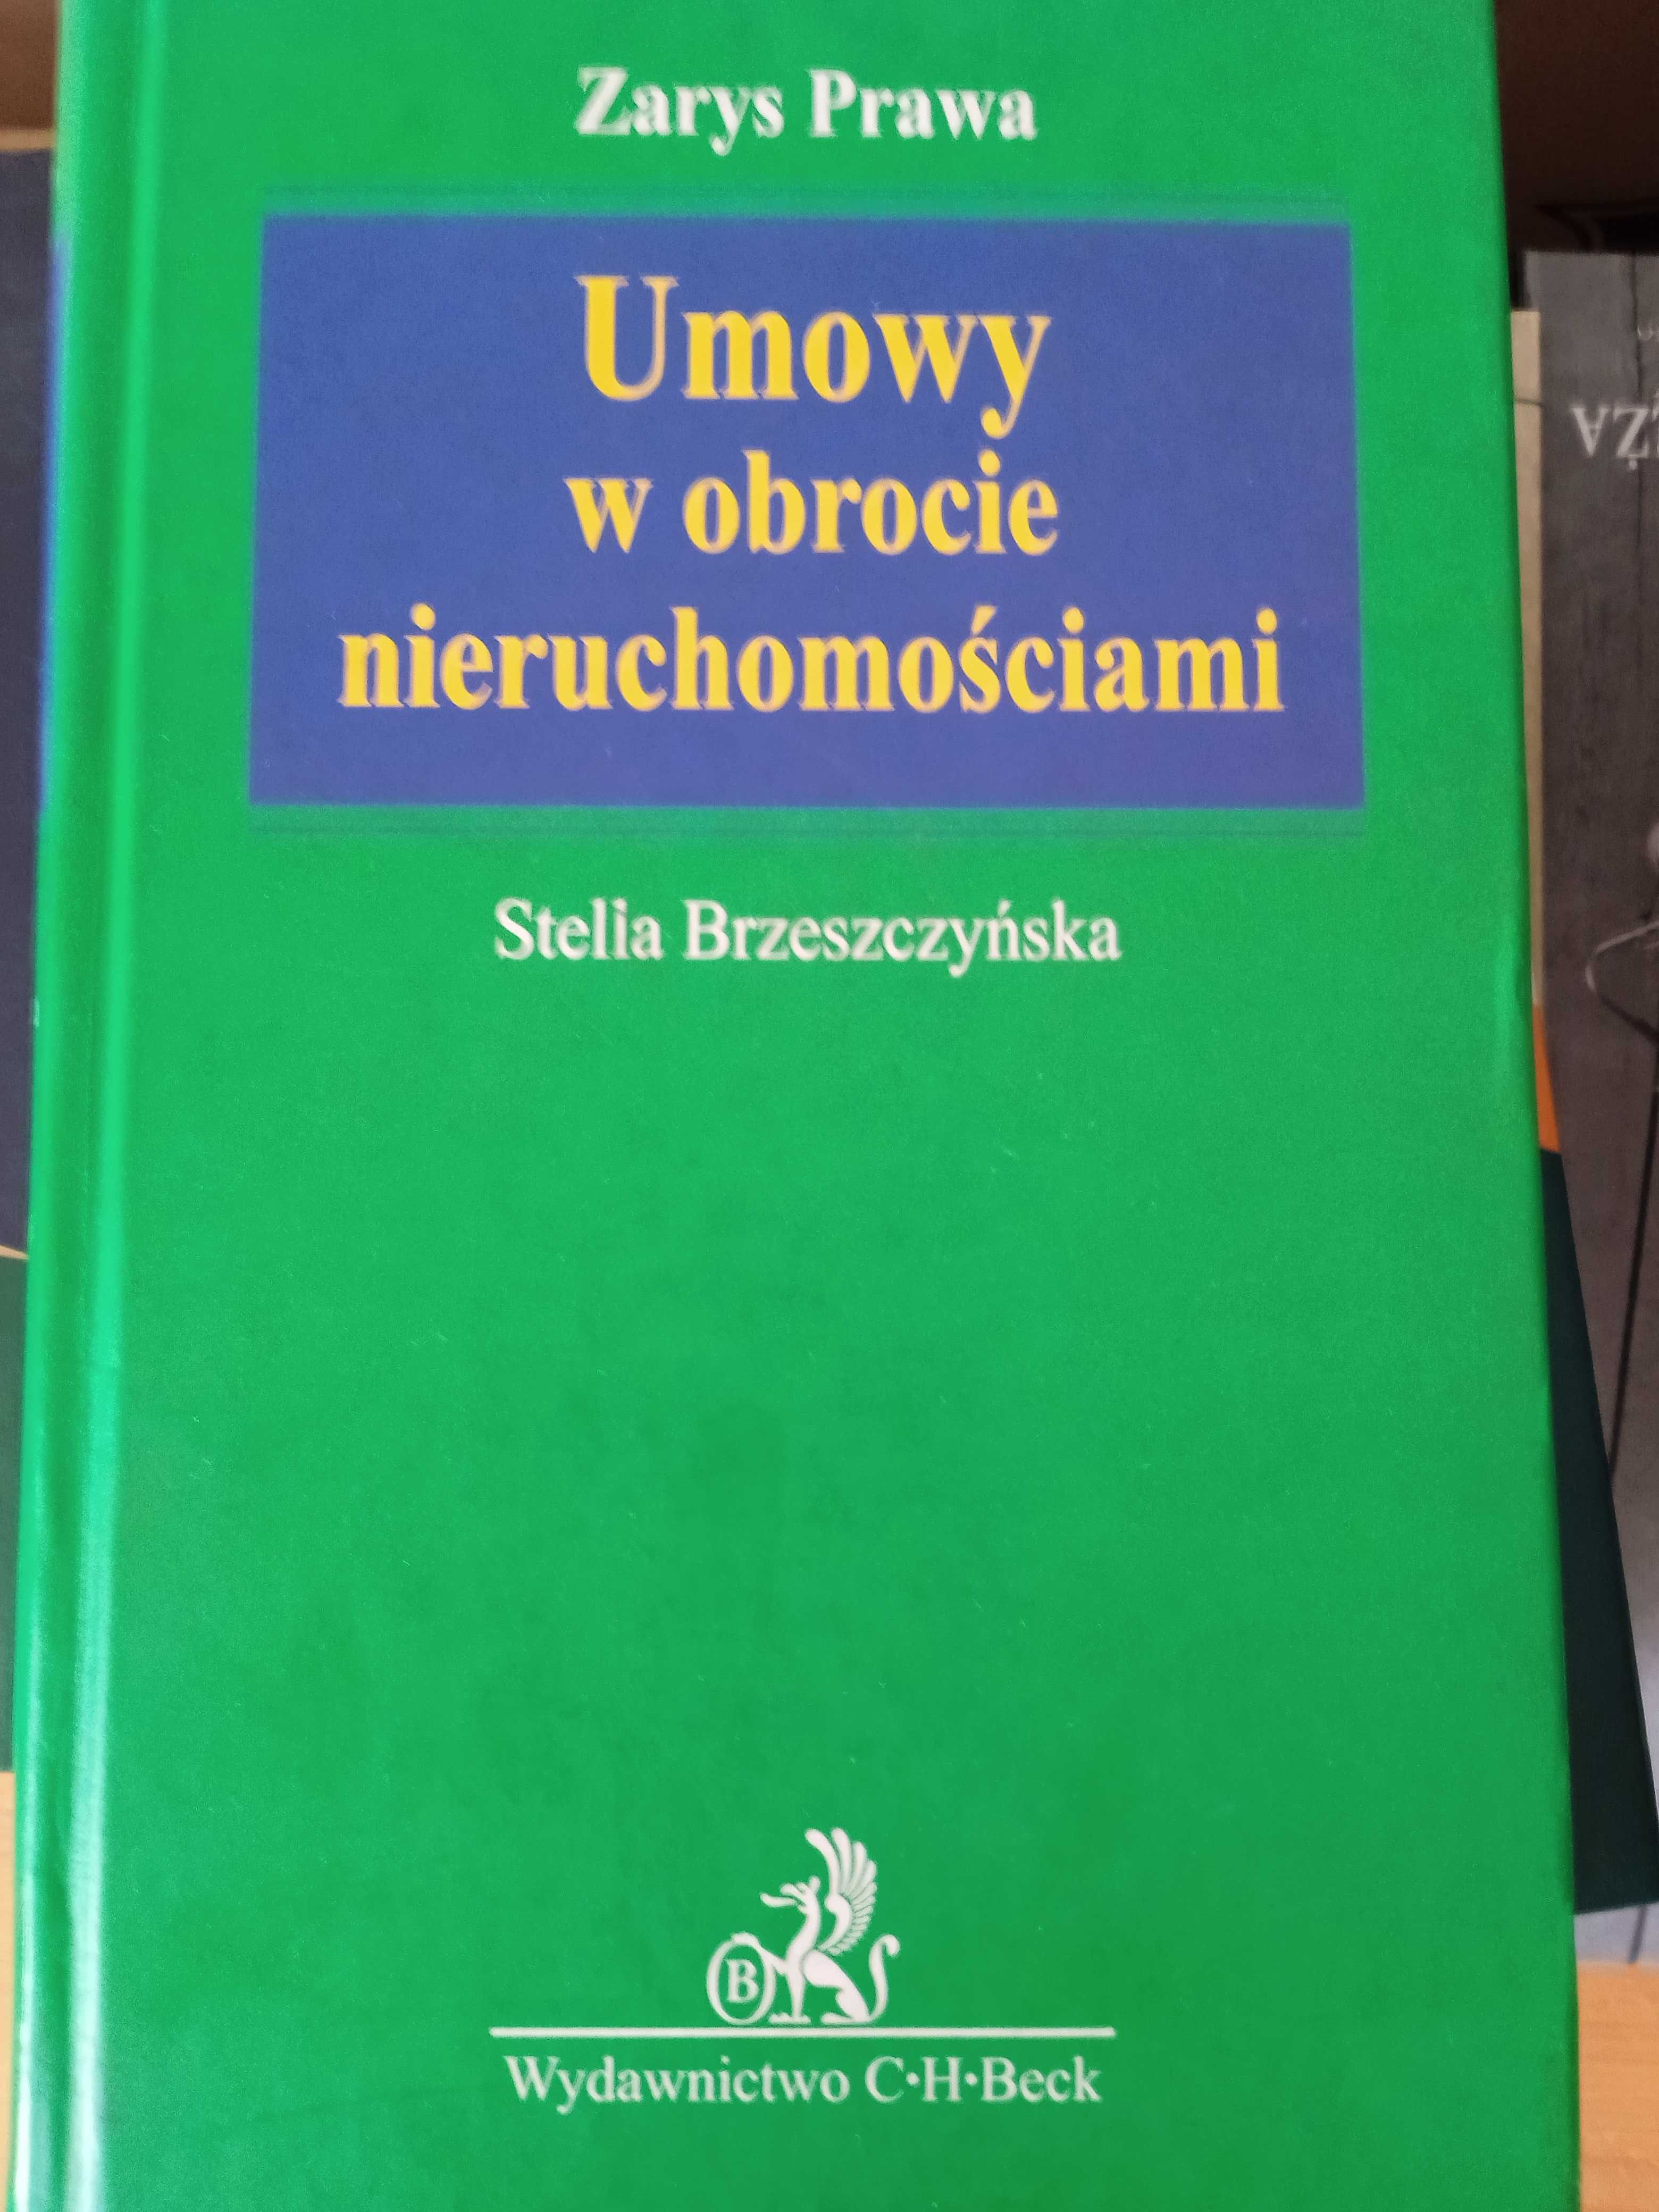 umowy w obrocie nieruchomościami  Stella Brzeszczynska, 2003r.